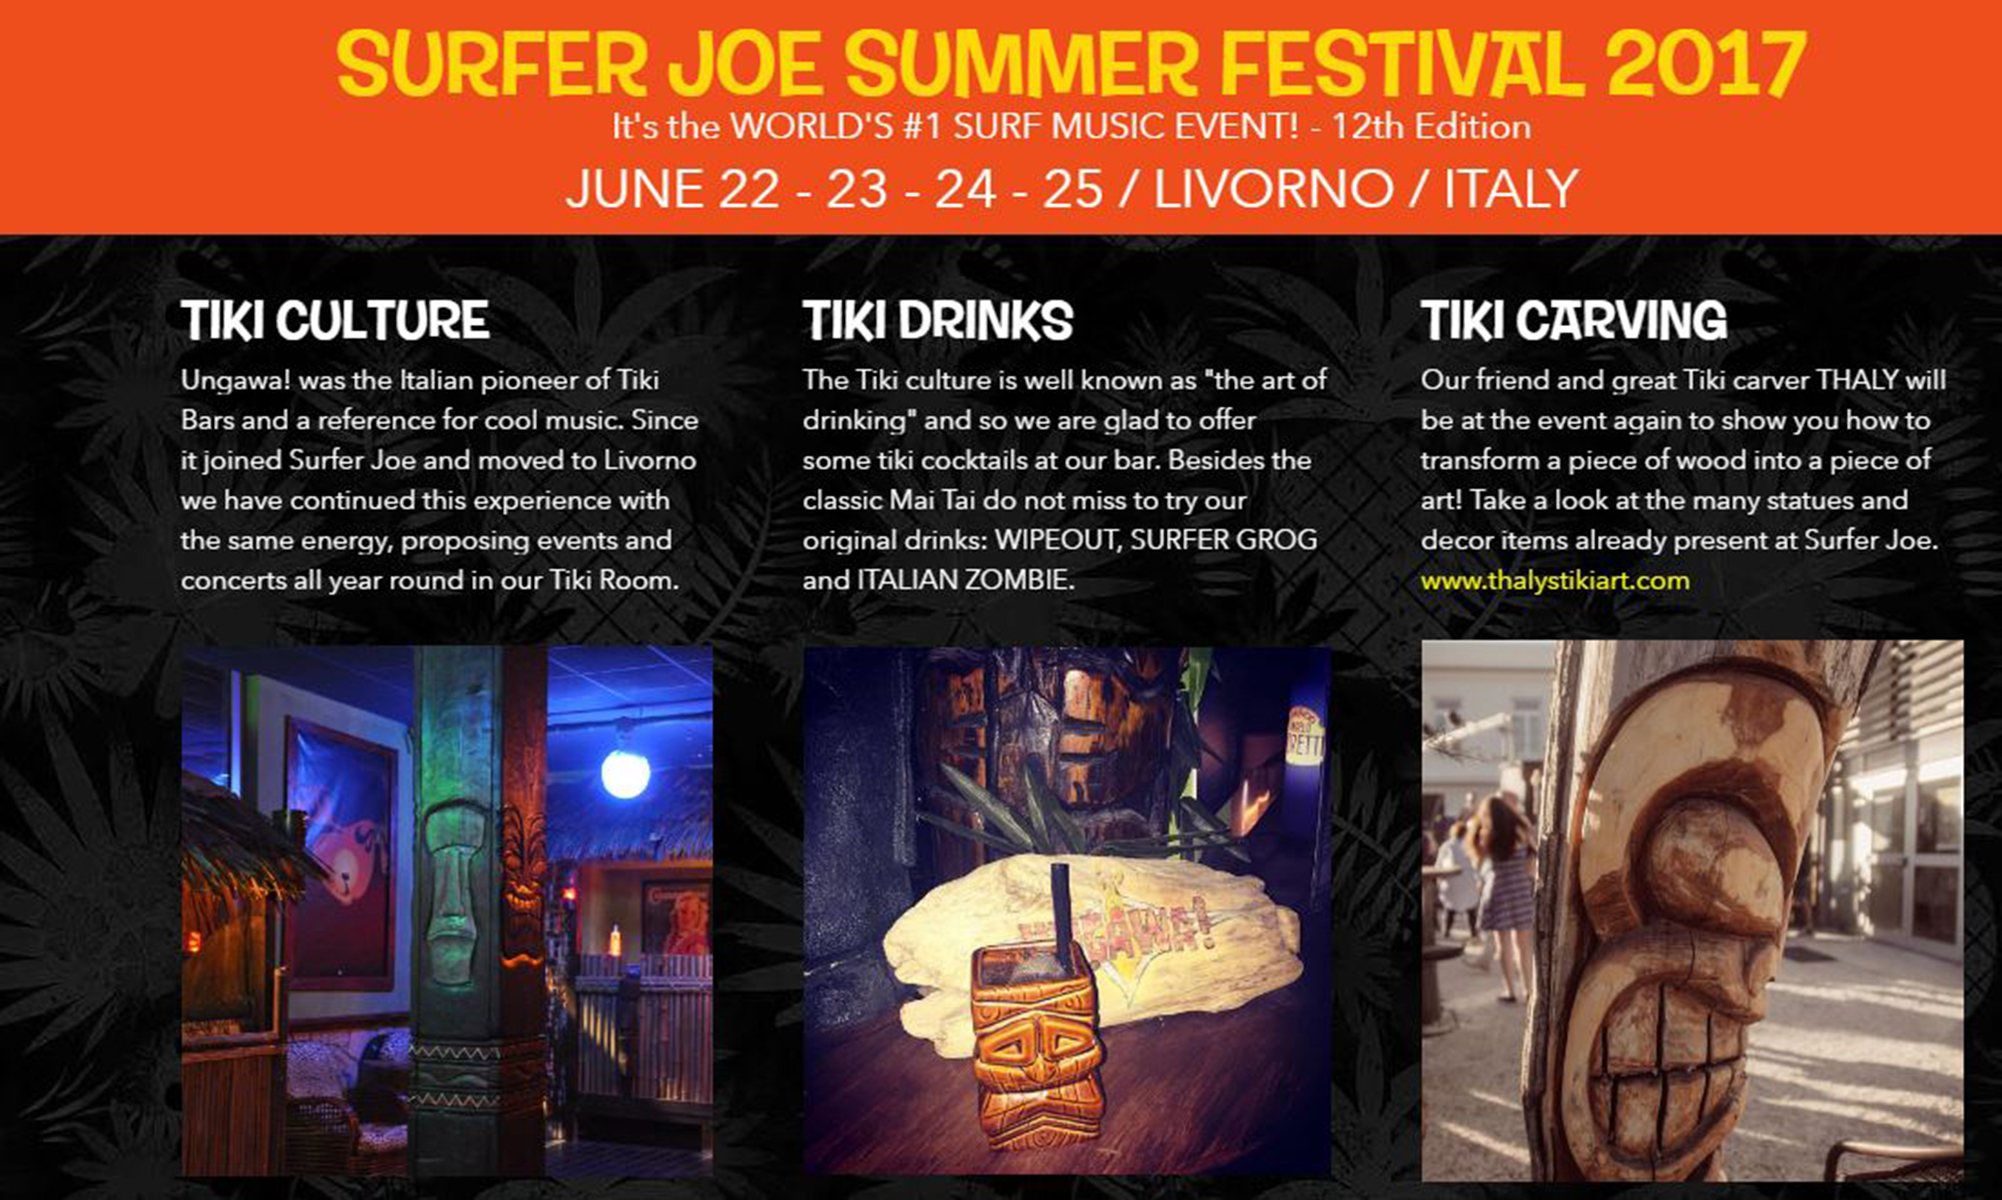 Surfer Joe Summer Festival 2017